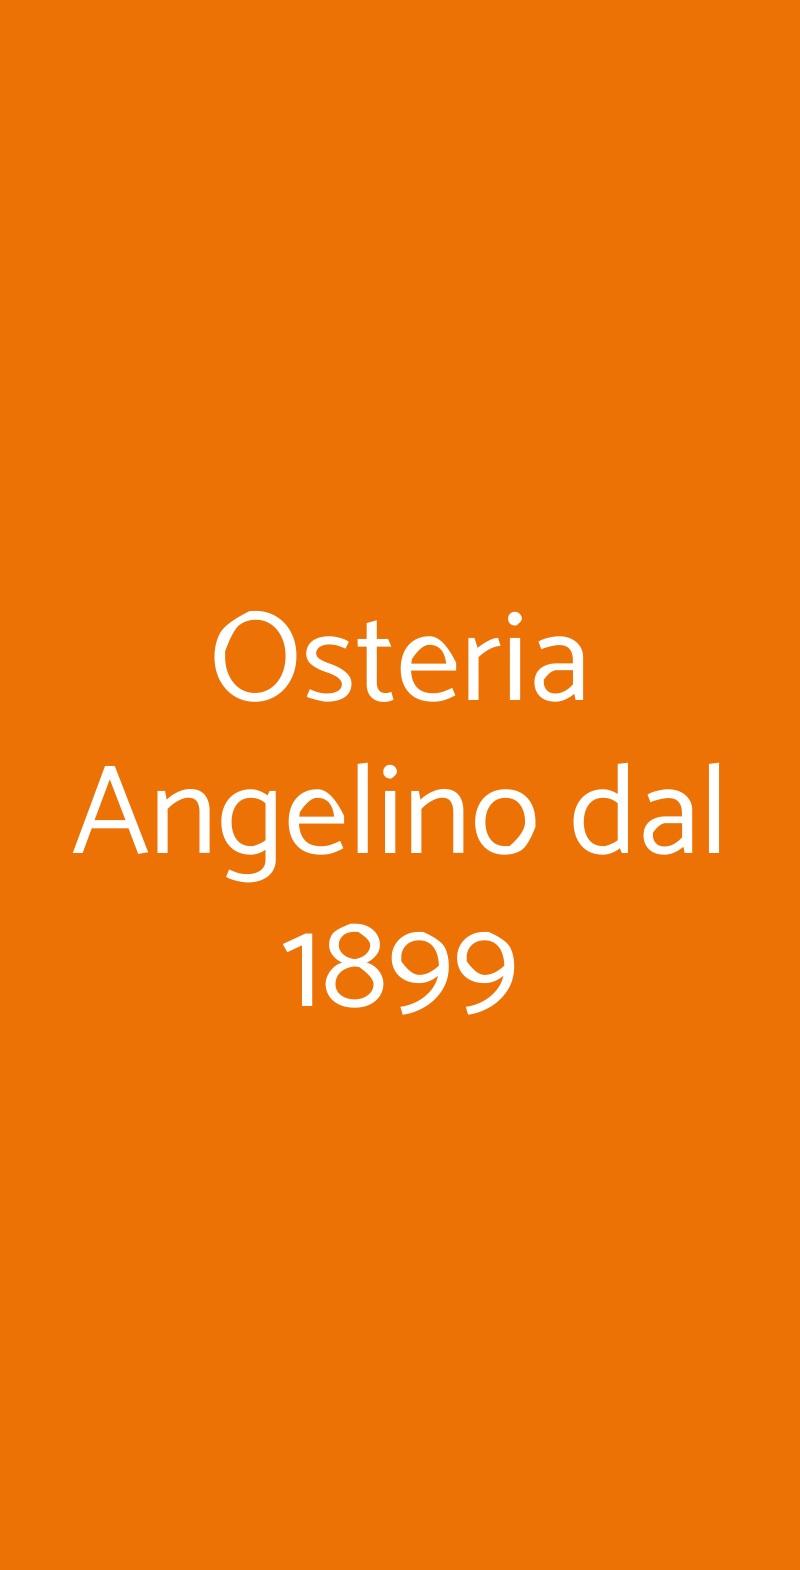 Osteria Angelino dal 1899 Milano menù 1 pagina